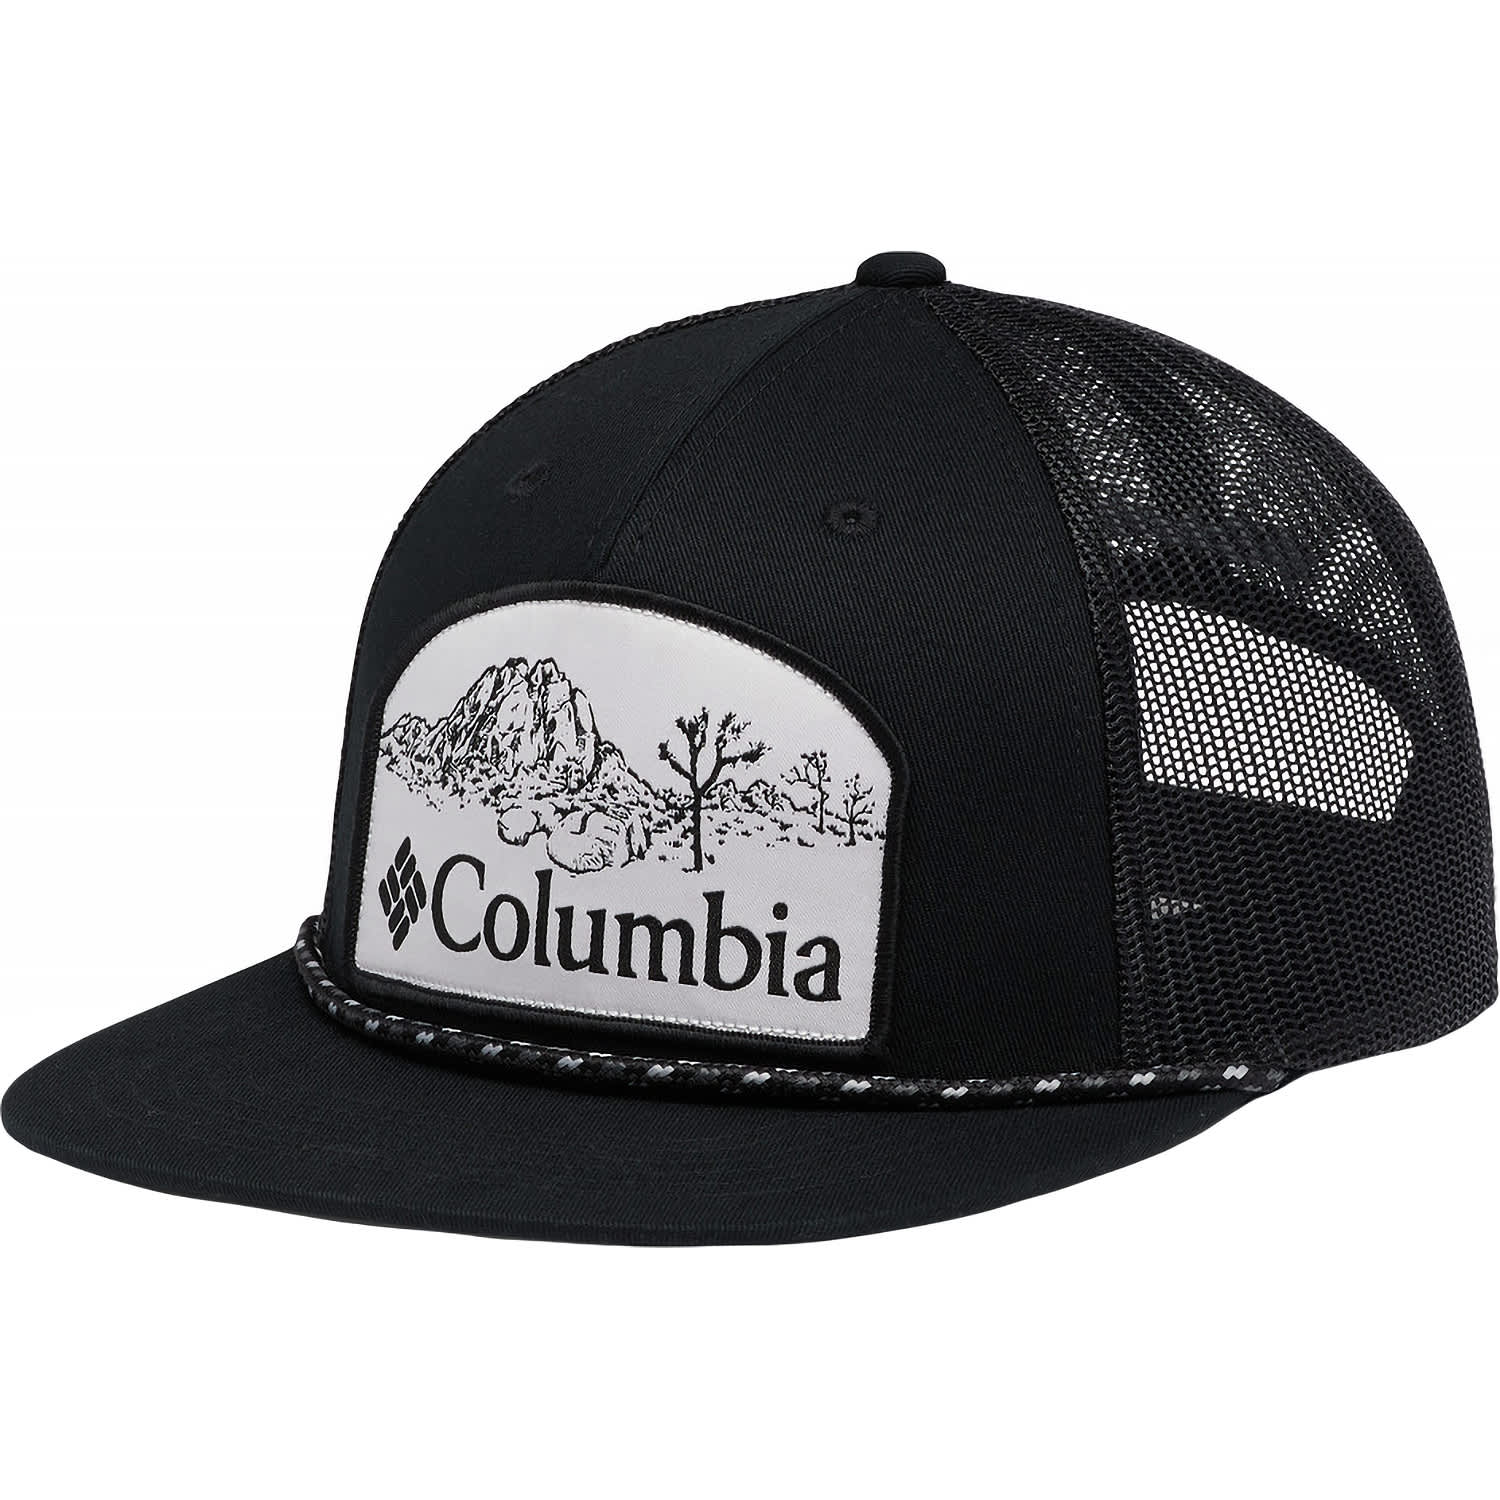 Columbia® Men's Flat Brim Snapback Cap